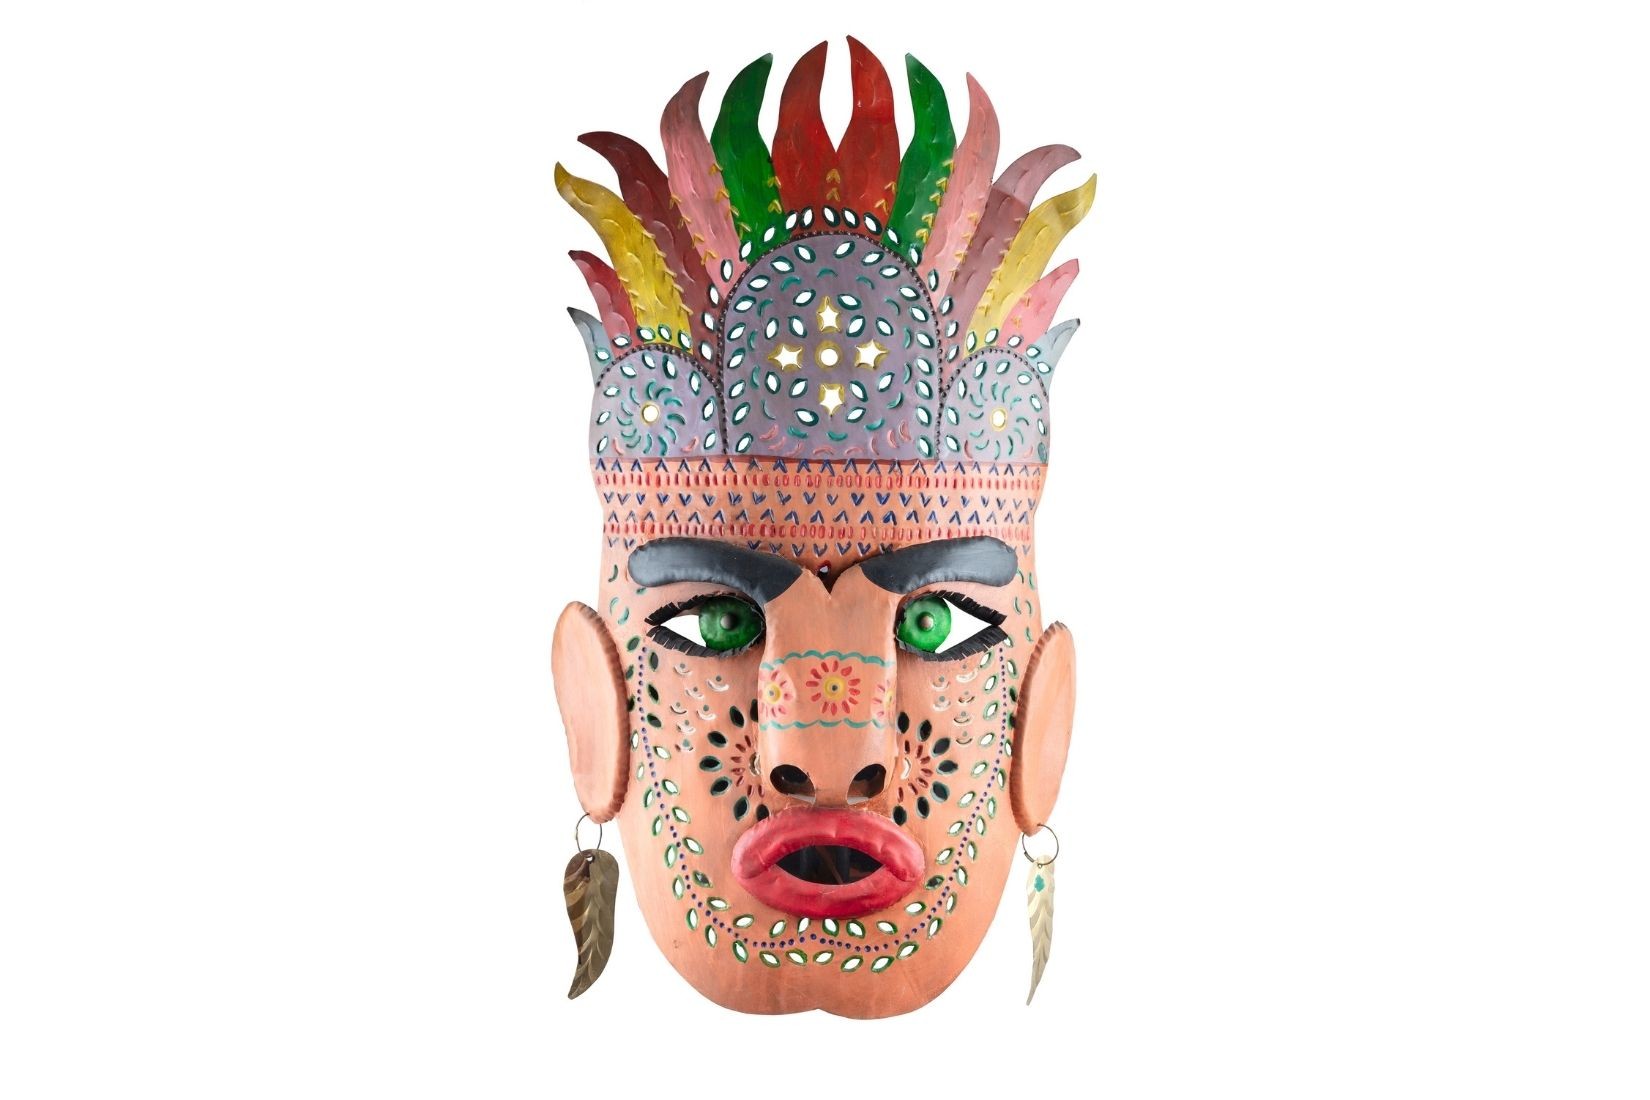 Máscara de hombre con penacho. Lámina de cobre. Artesano desconocido. San Miguel de Allende, Gto. Col. Miguel Abruch. (Foto: GLR Estudio).